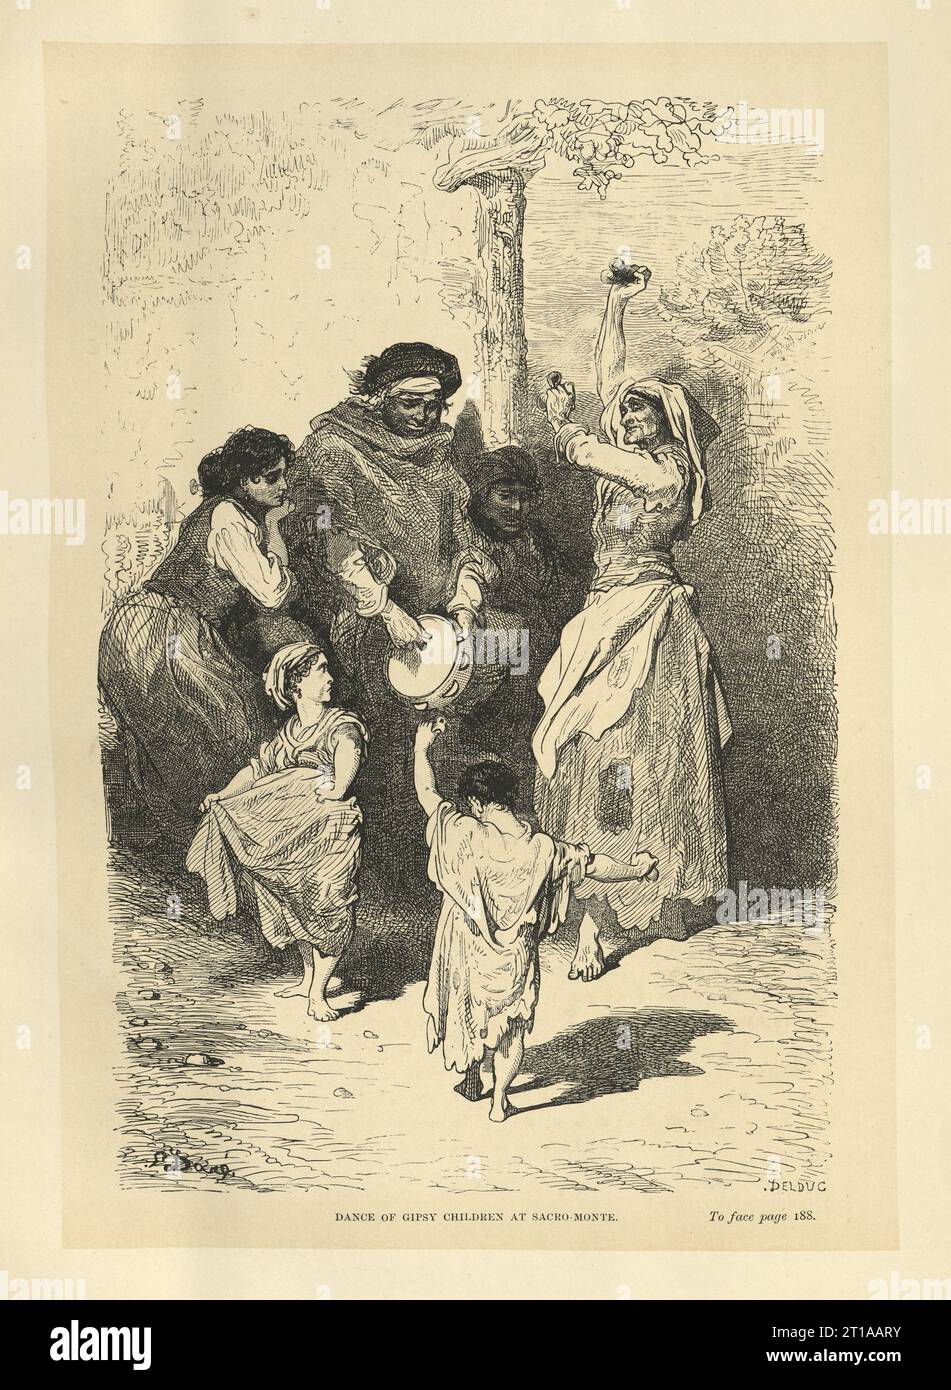 Illustration vintage, danse des enfants gipsy à Sacromonte, Grenade, Espagne, illustrée par Gustave Dore Banque D'Images